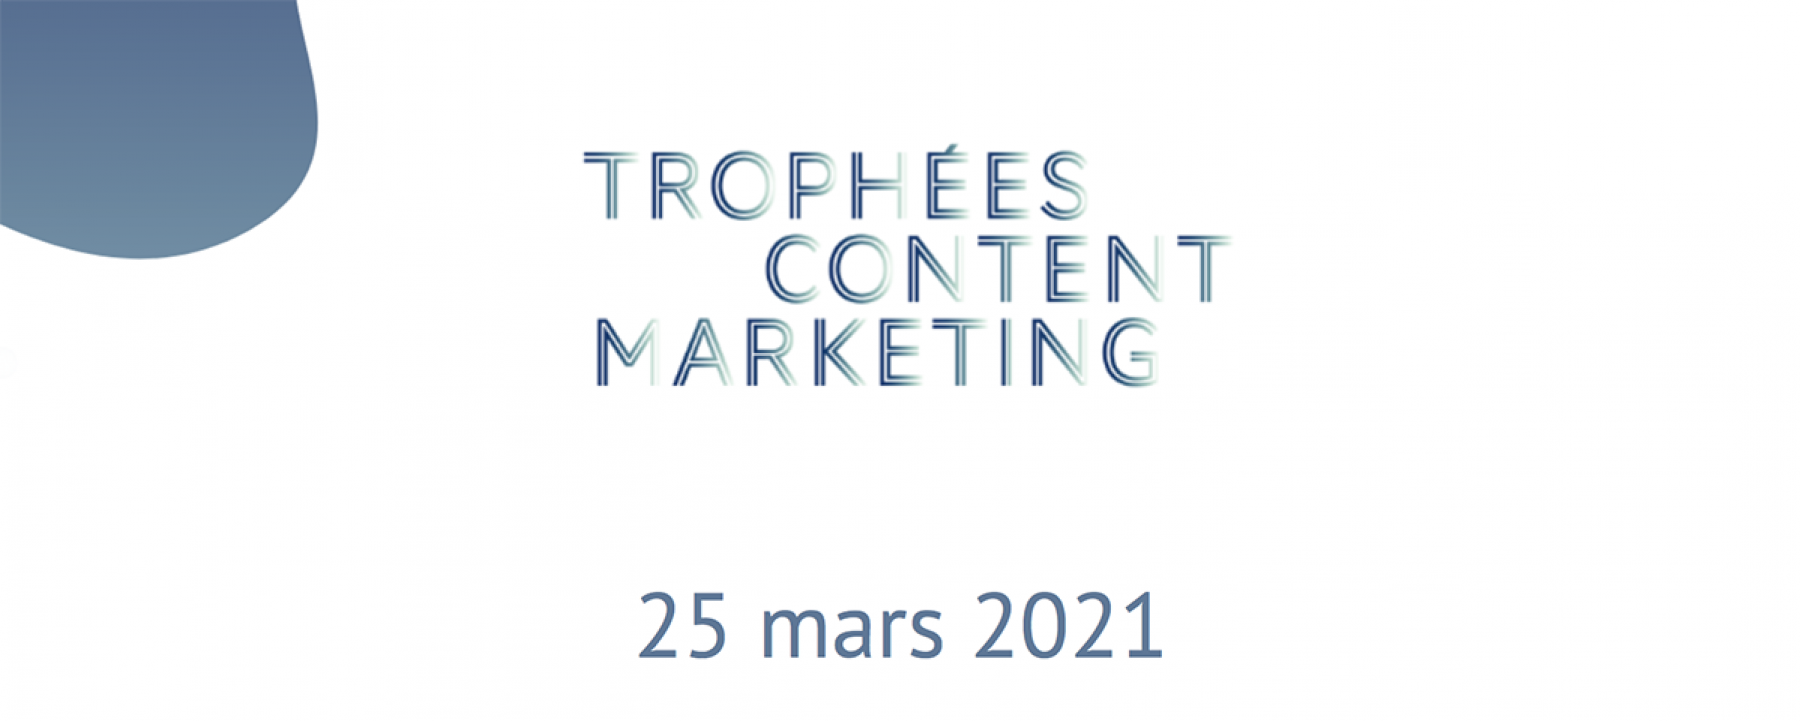 Trophées Content Marketing, un événement organisé par NeMedia Group le 25 mars 2021